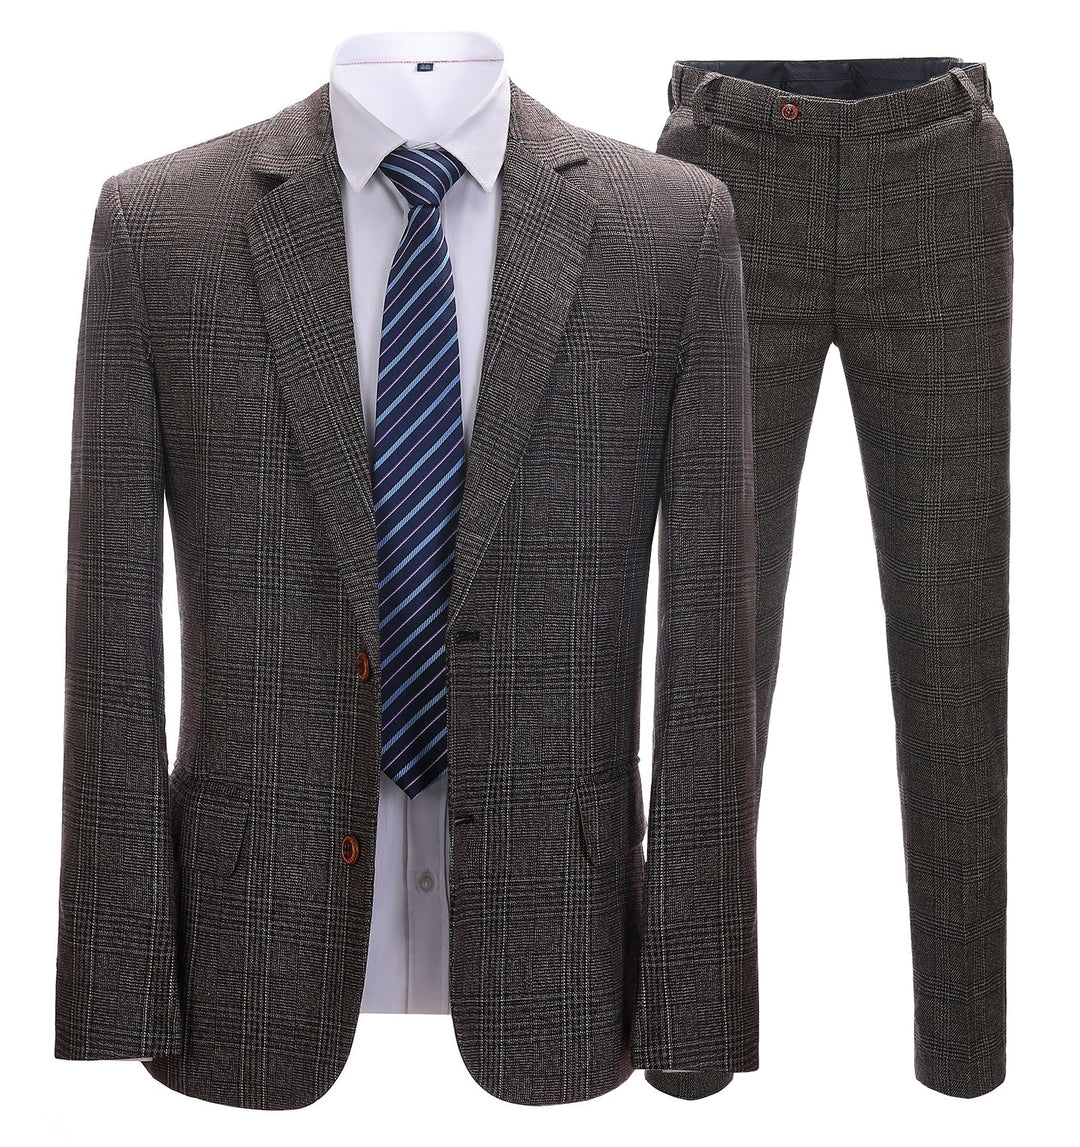 Business Men's Suit Formal Tweed 2 Pieces Coffee Plaid Notch Lapel Tuxedos (Blazer+Pants) mens event wear